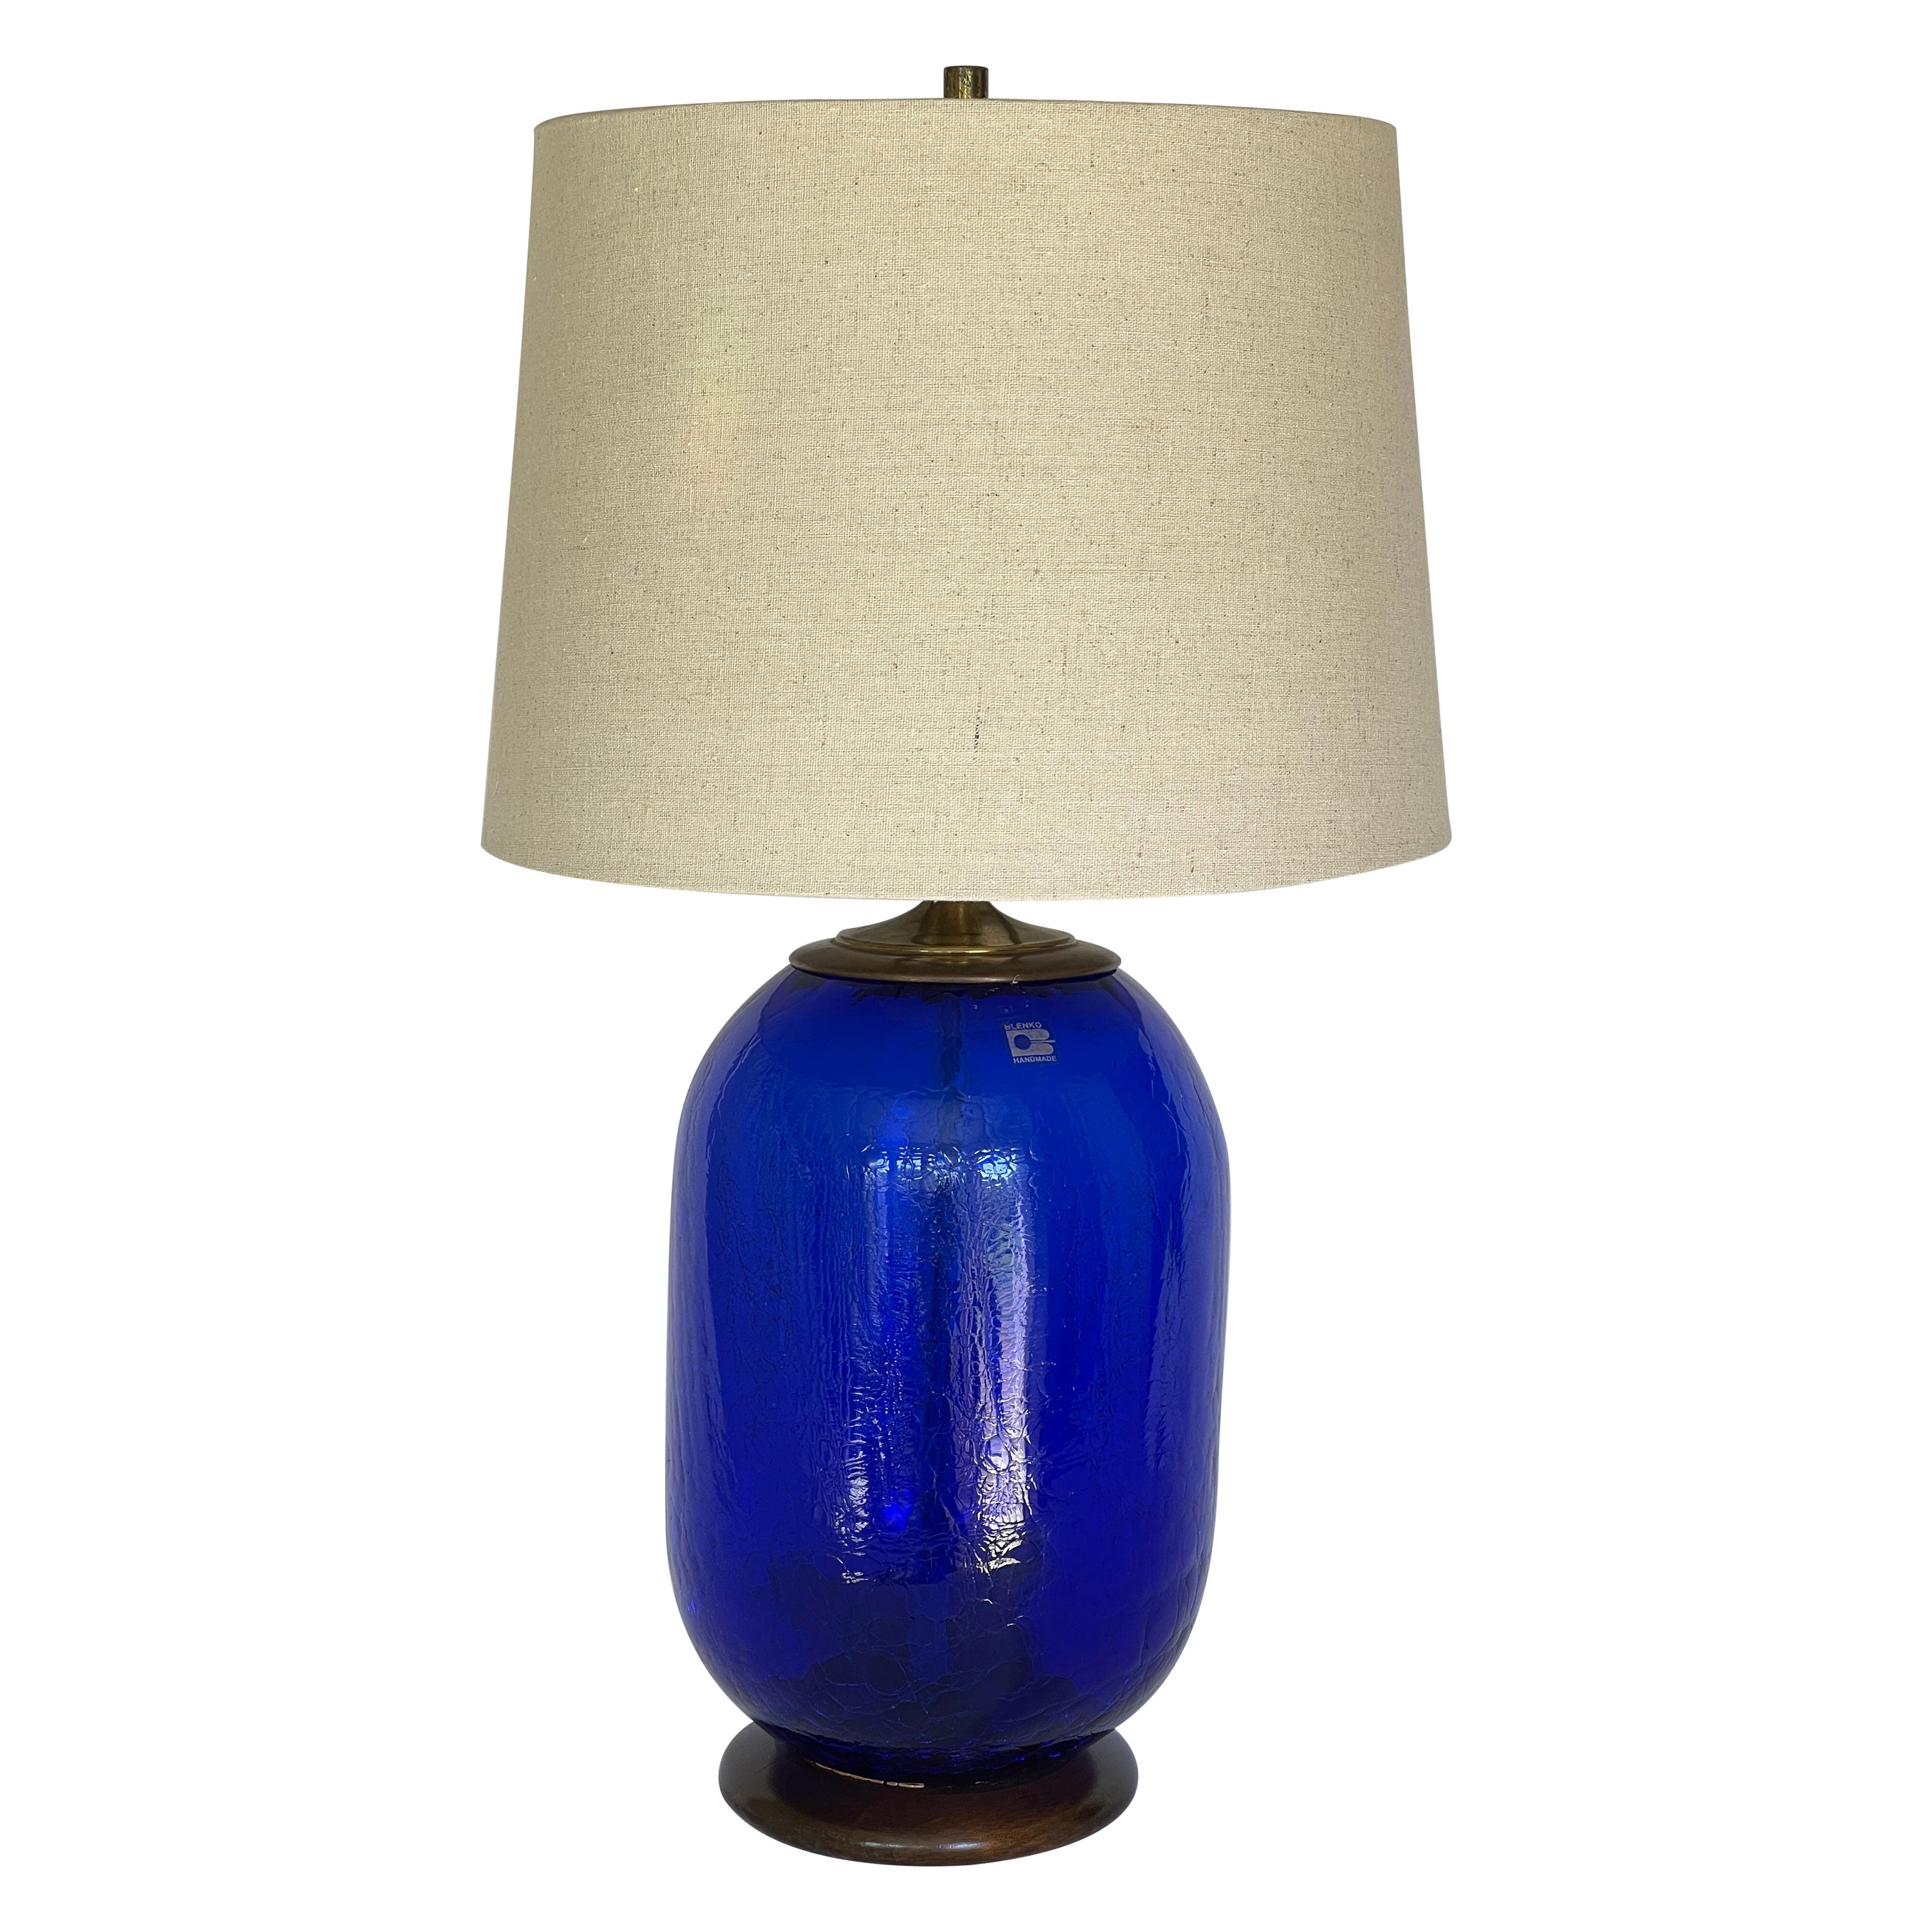 Blenko Signed Blue Crackled Glass Barrel Lamp For Sale